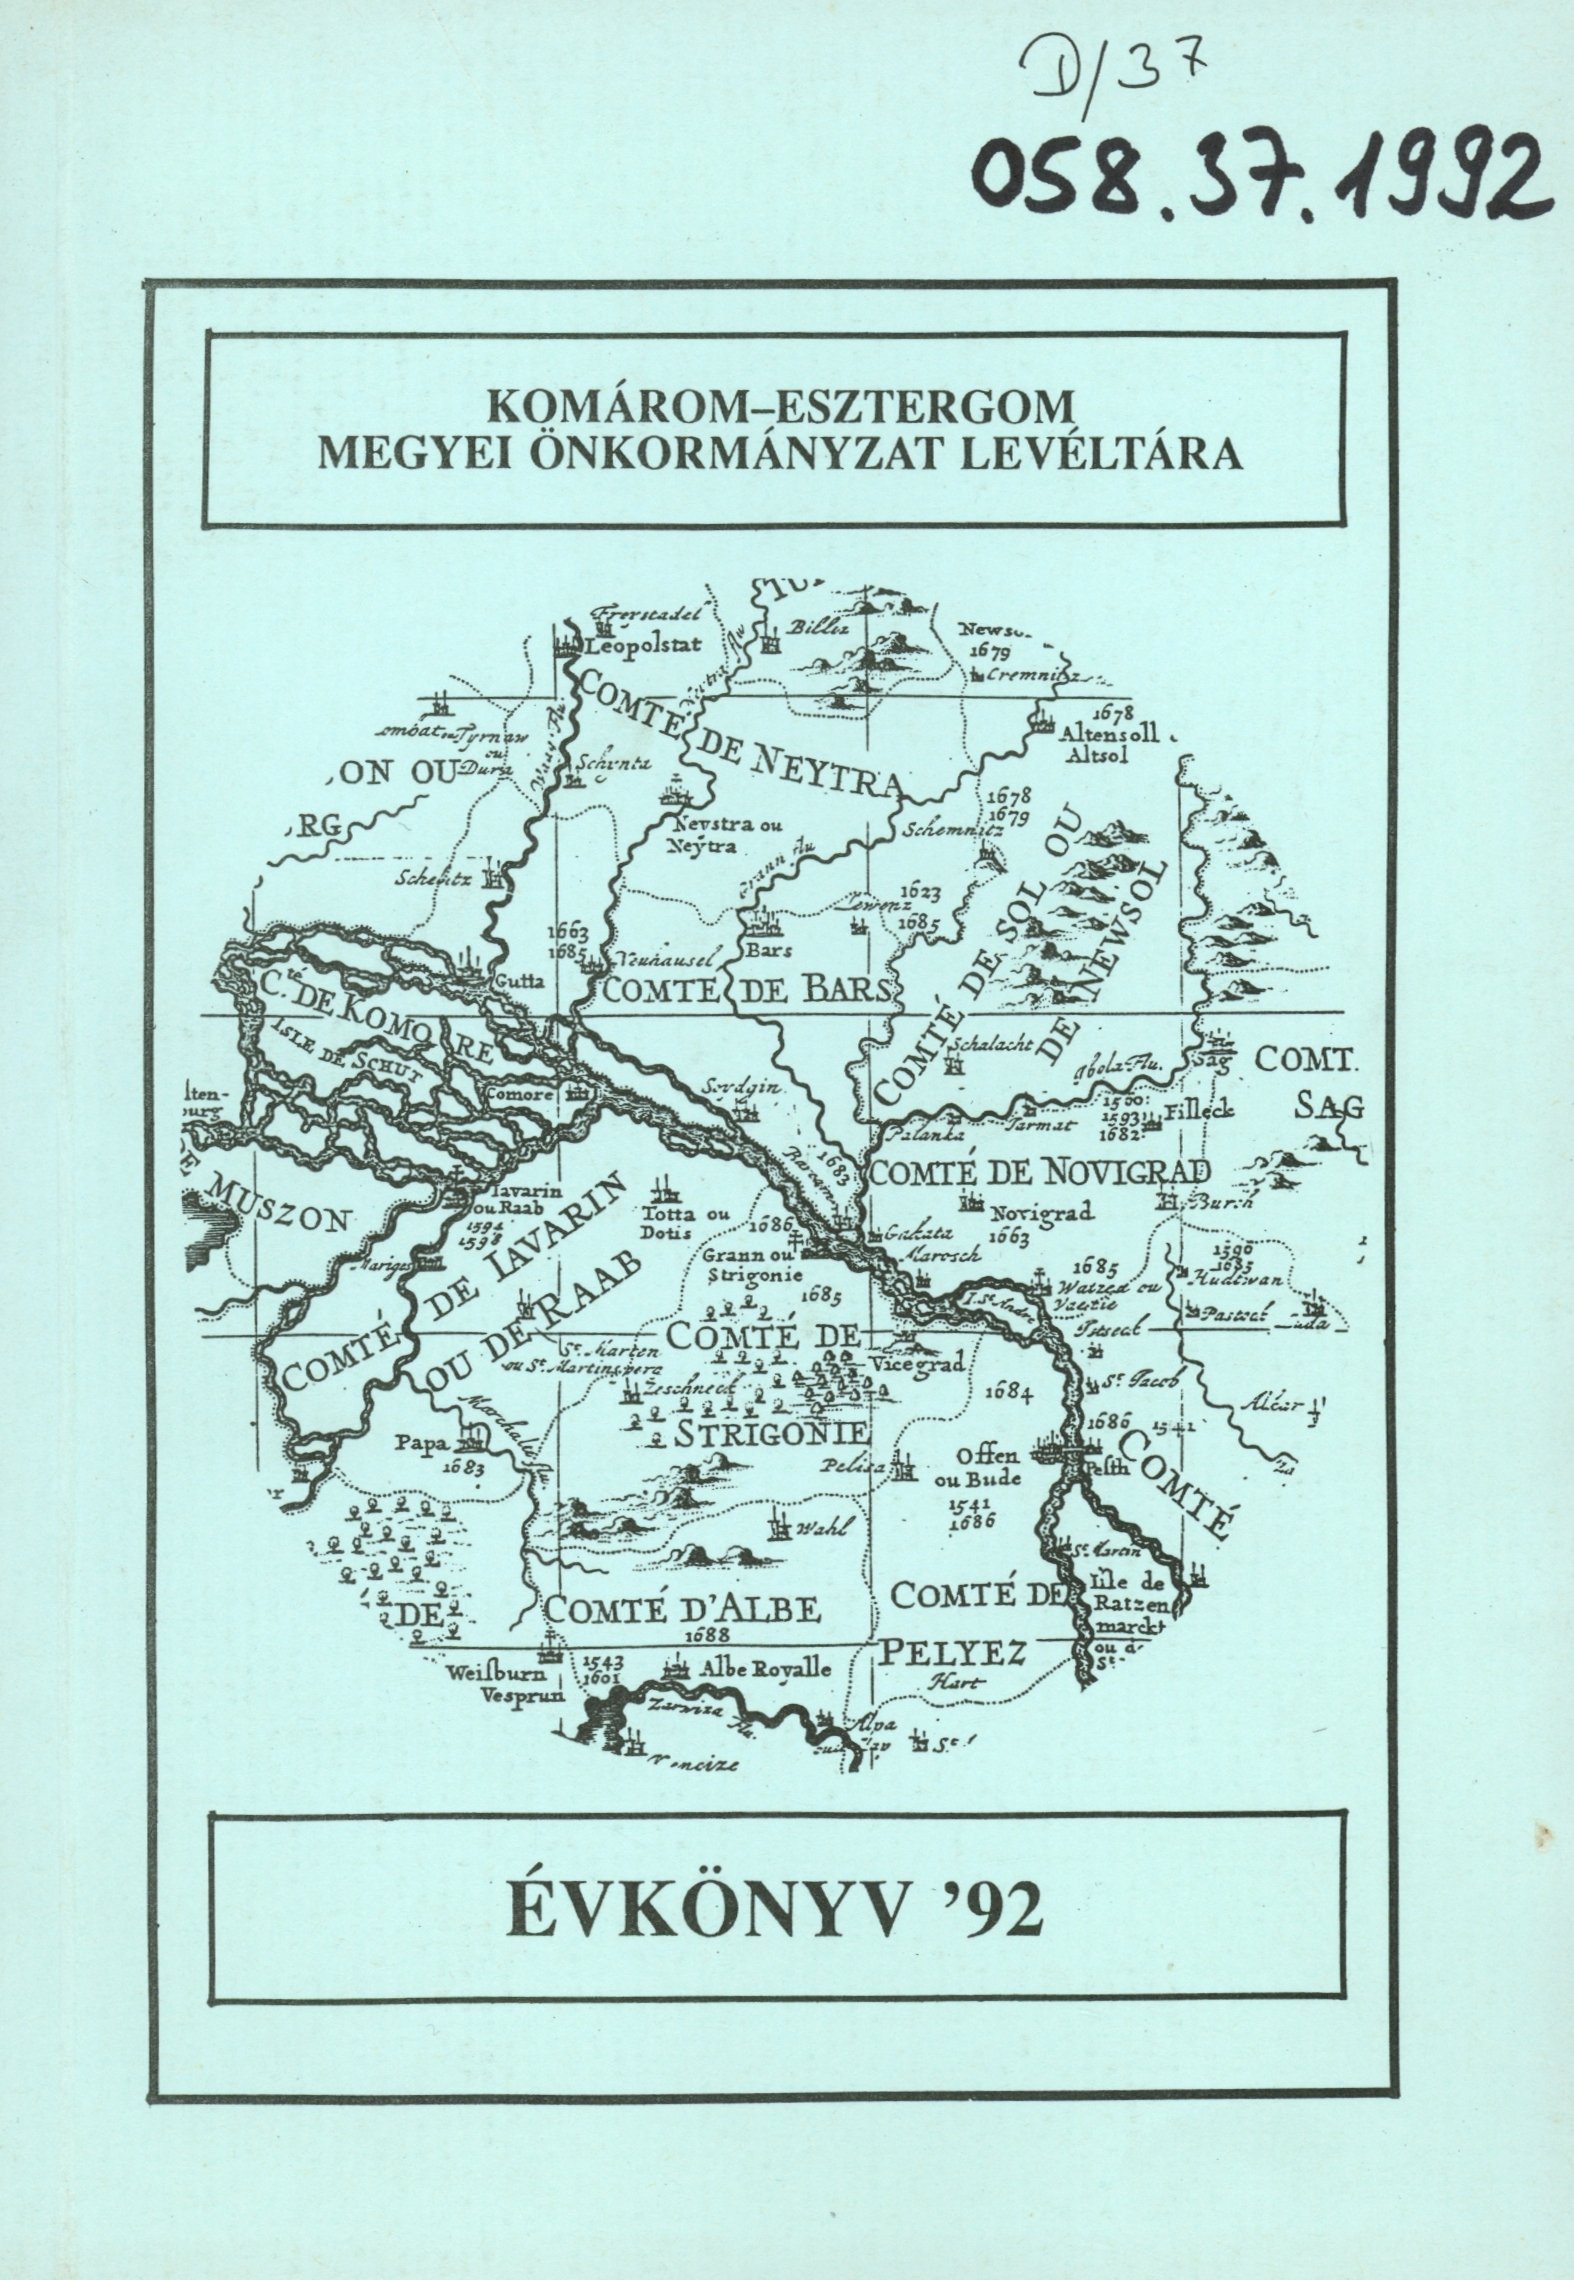 Komárom-Esztergom Megyei Önkormányzat Levéltára Évkönyv '92 (Erkel Ferenc Múzeum és Könyvtár, Gyula CC BY-NC-SA)